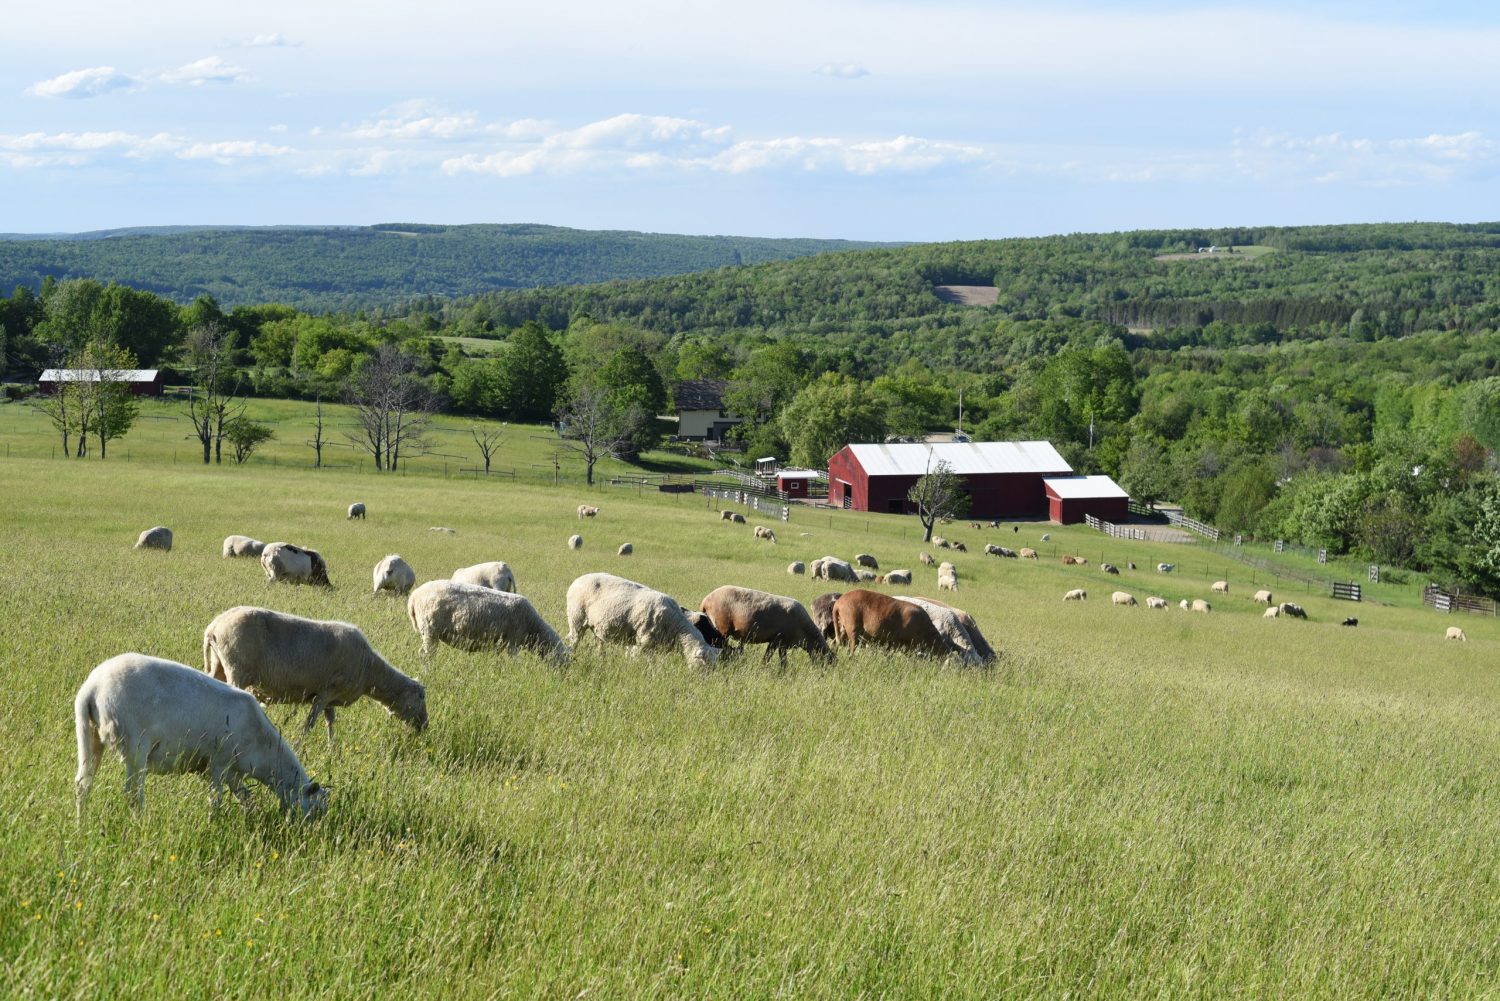 Vertical explainer photo 1 - Sheep pasture landscape at Farm Sanctuary